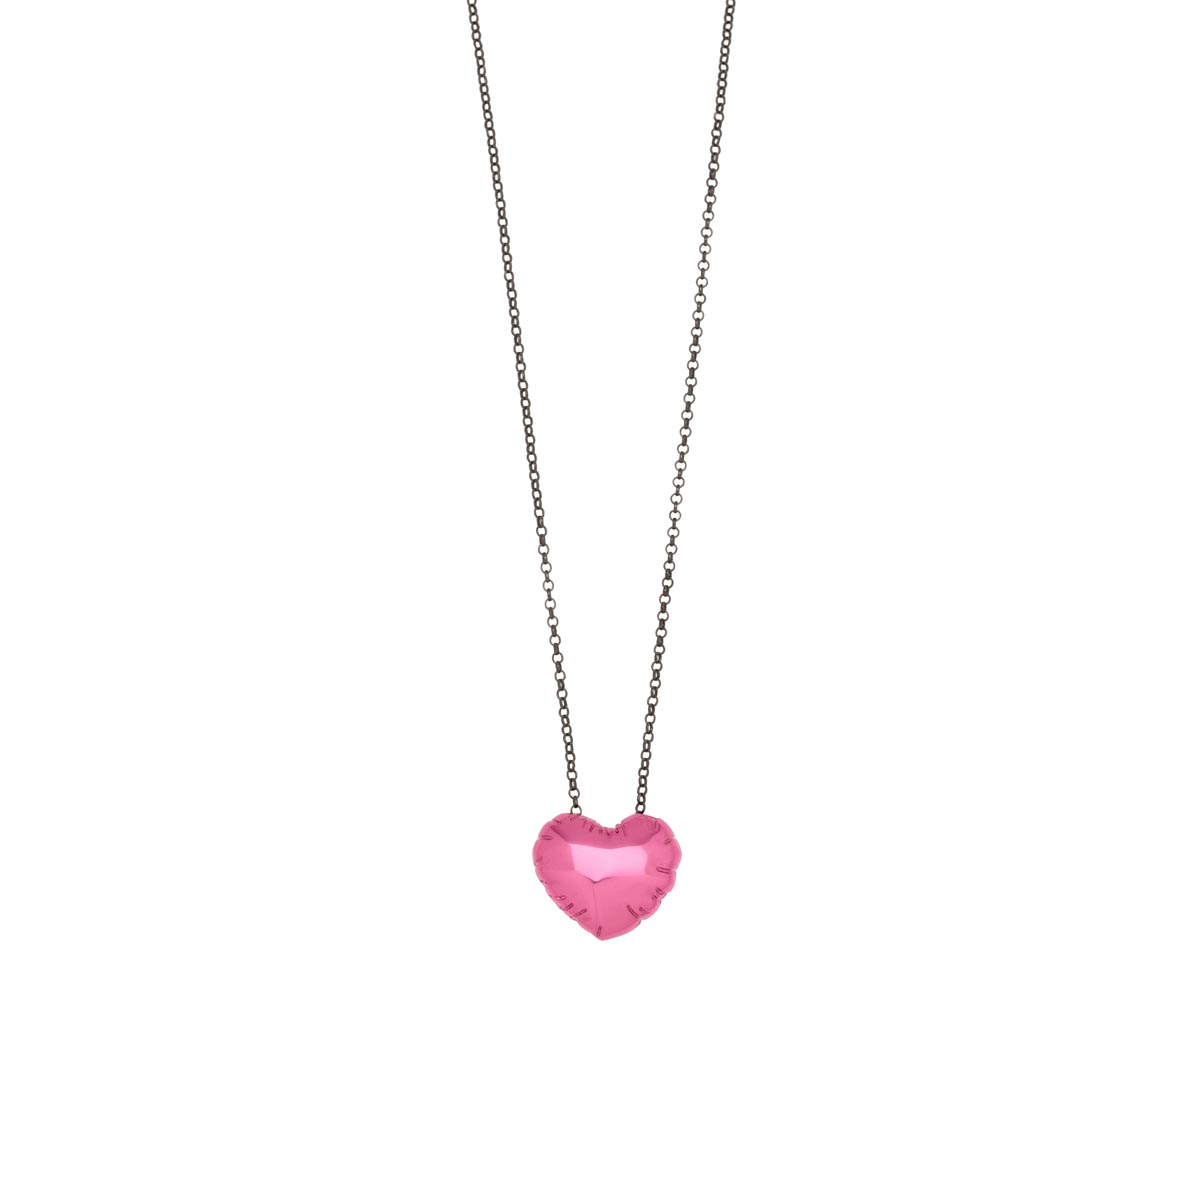 Κολιέ heart balloon από ασήμι 925 καρδιά με magenta νανοκεραμική βαφή